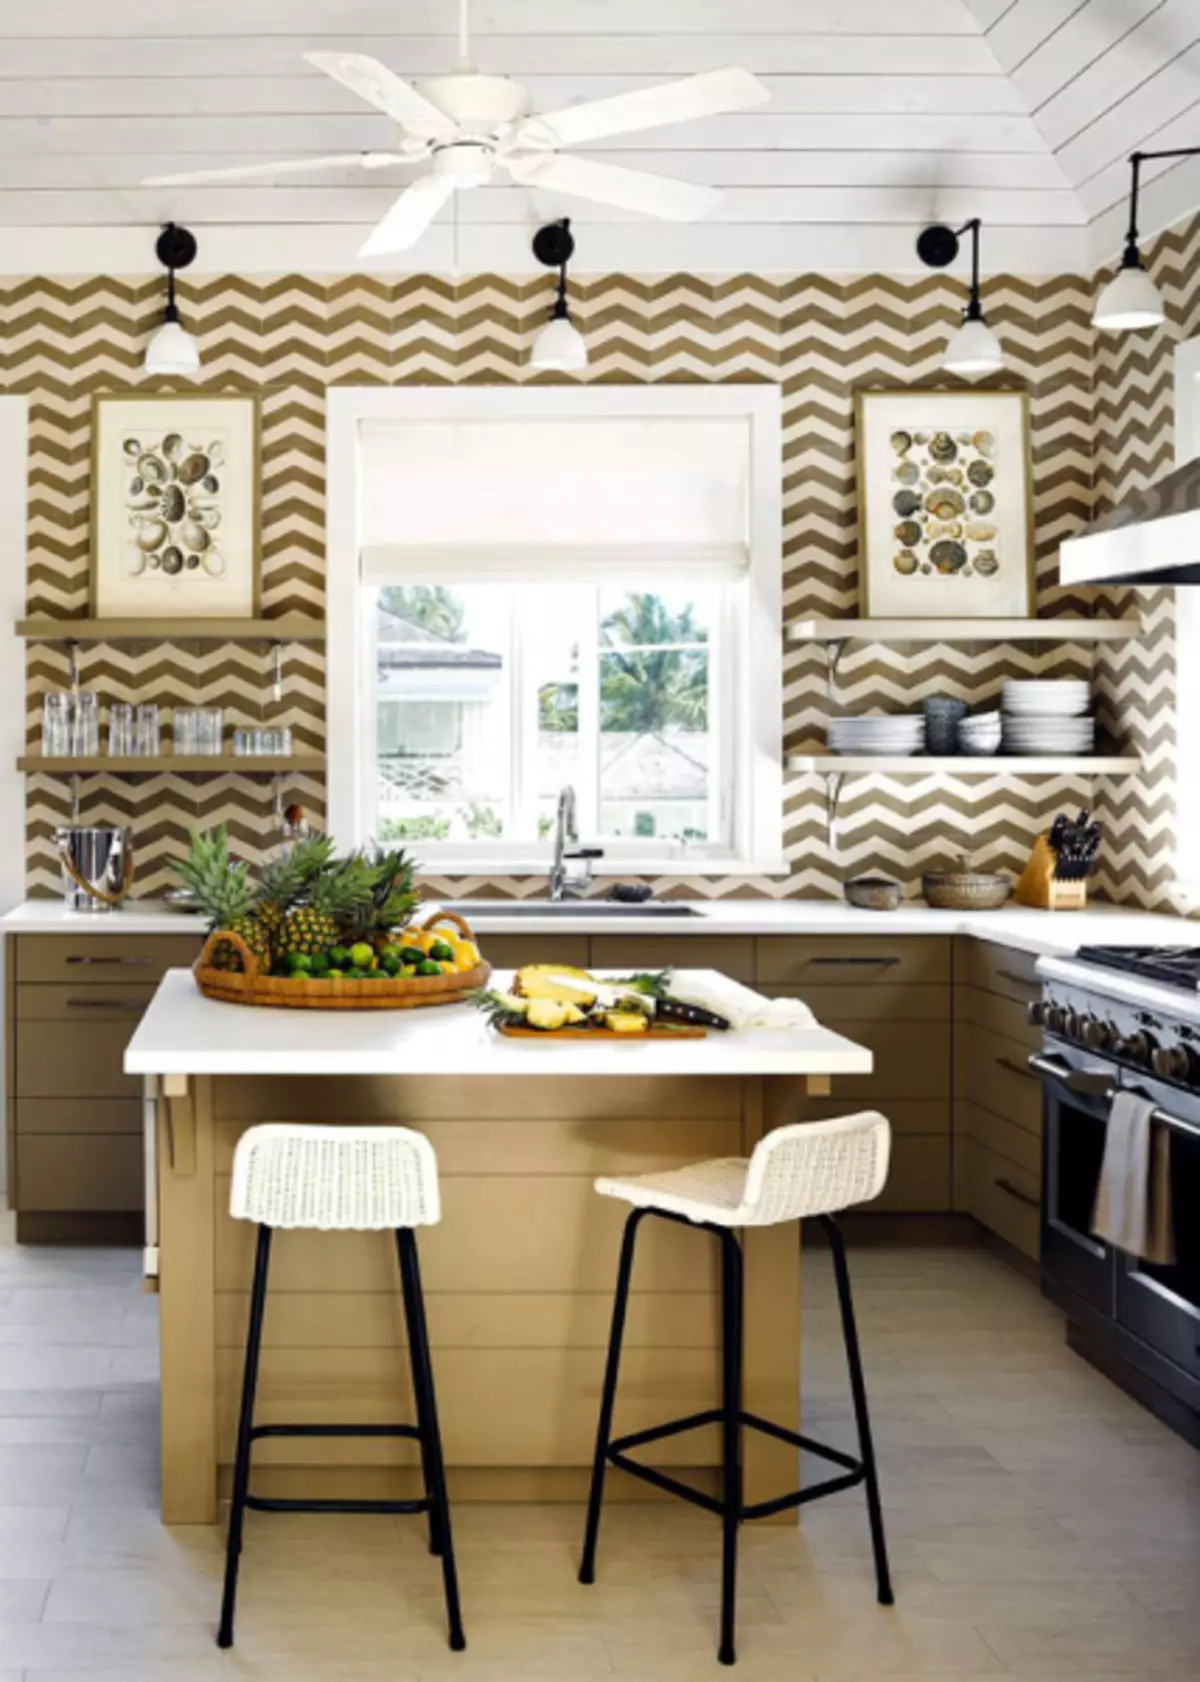 Schöne Fliese mit geometrischen Mustern für Küchenschürze